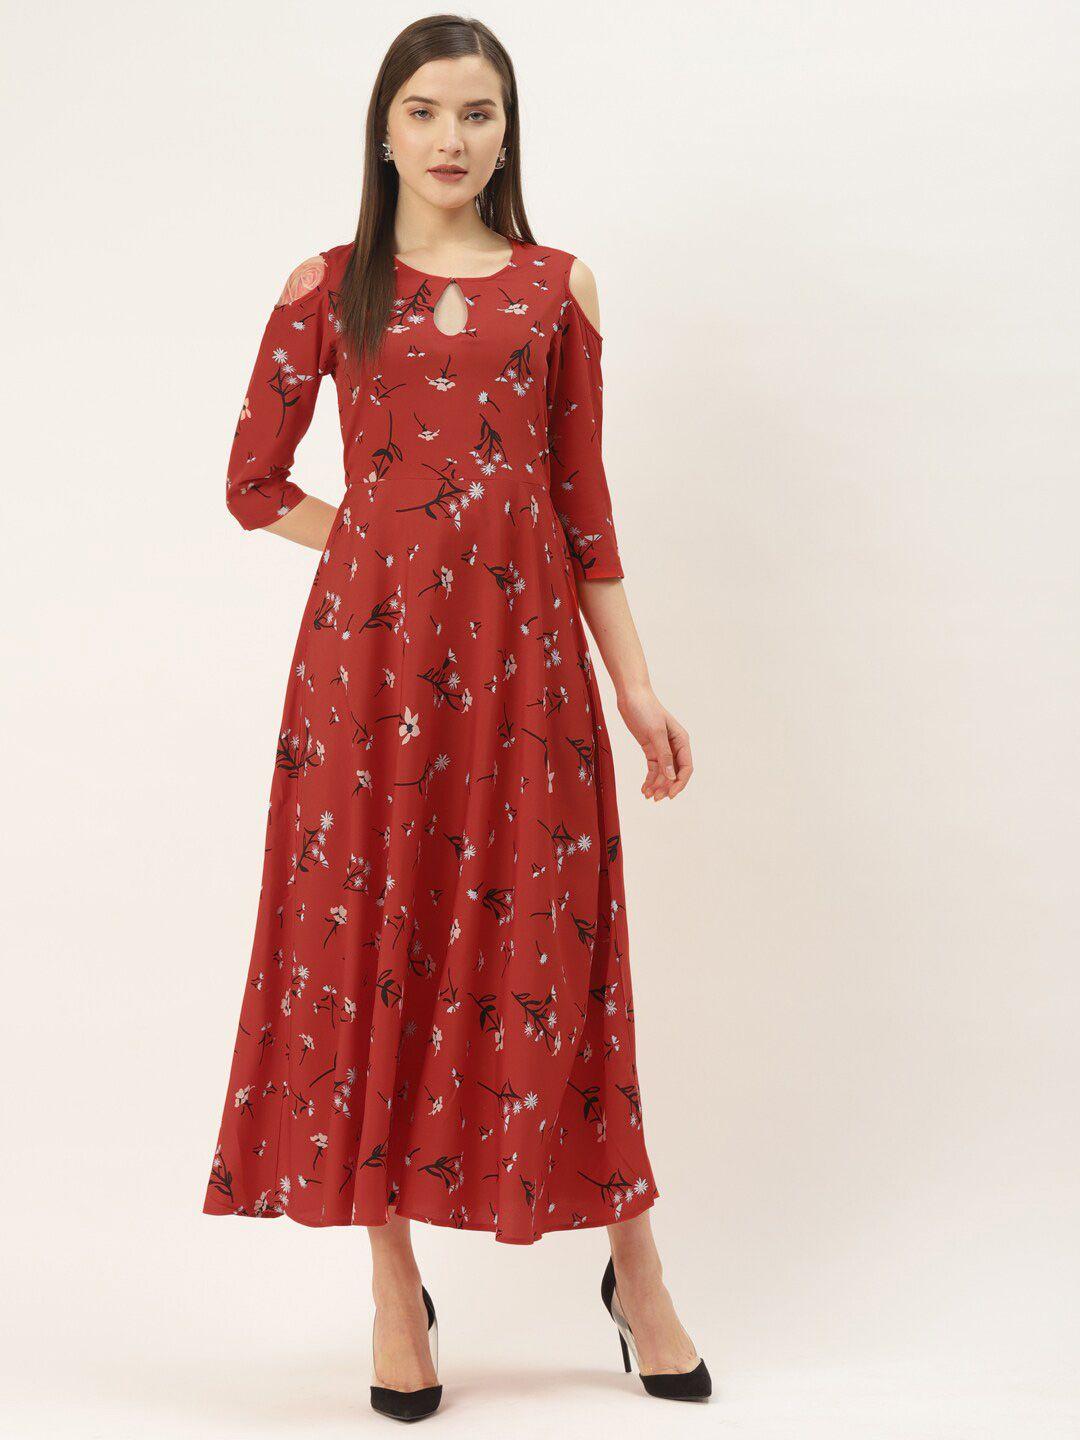 dressberry-red-floral-printed-key-hole-neck-cold-shoulder-a-line-dress